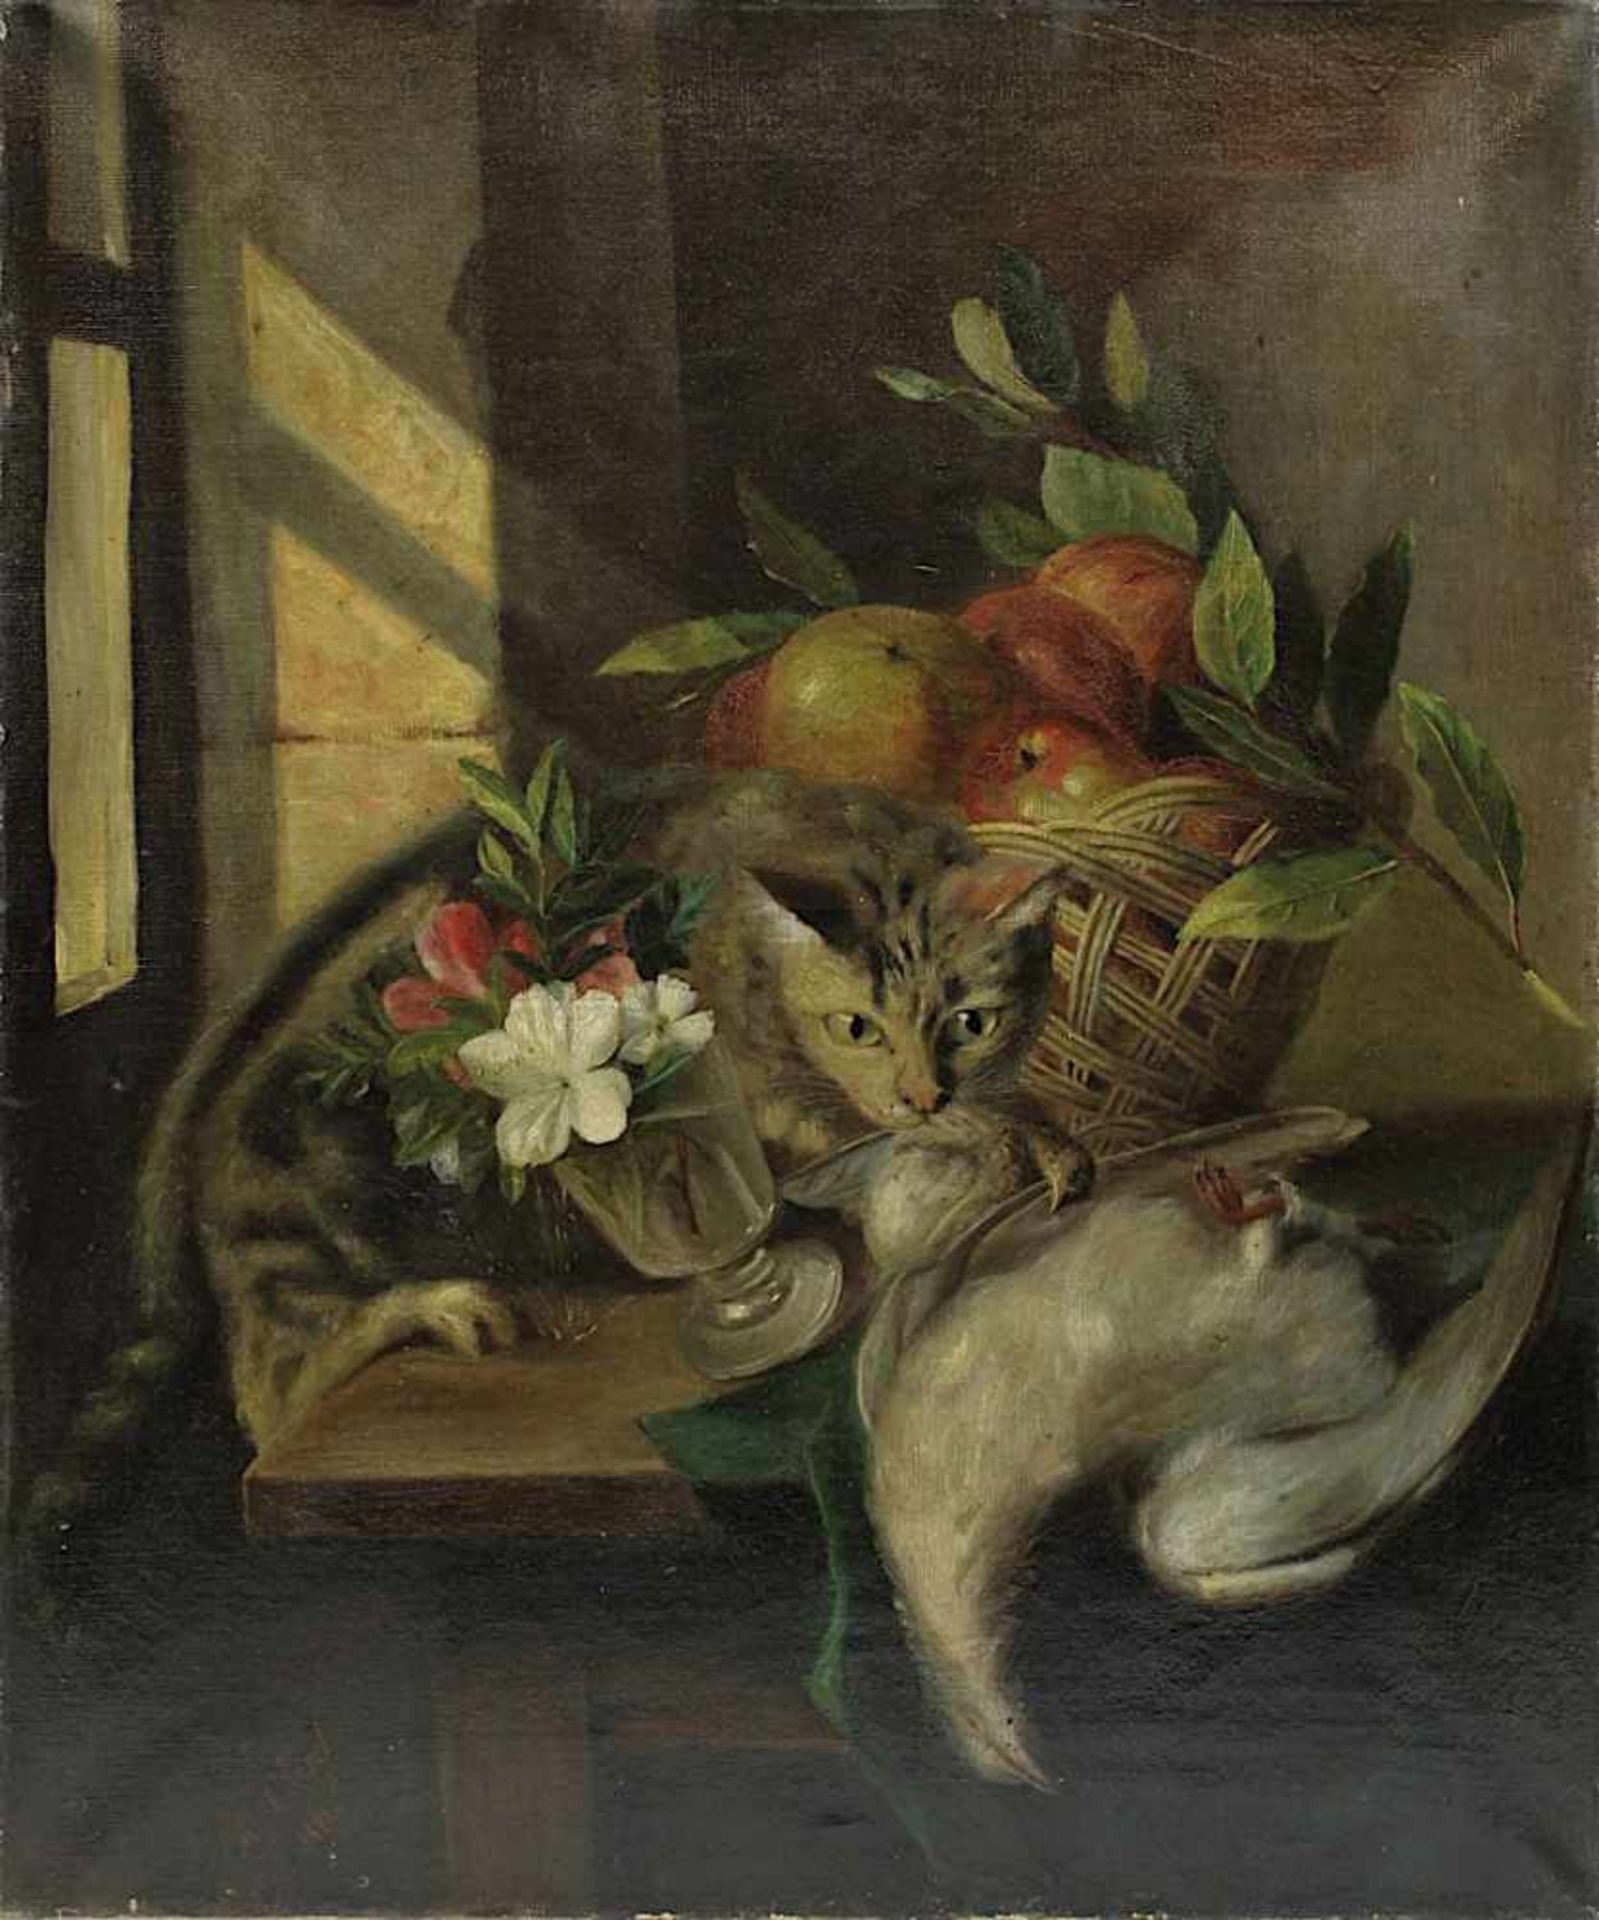 Claret, M. (Stillebenmaler, 2.H.19.Jh.), Stilleben mit Katze und totem Federvieh, Blumenvase und